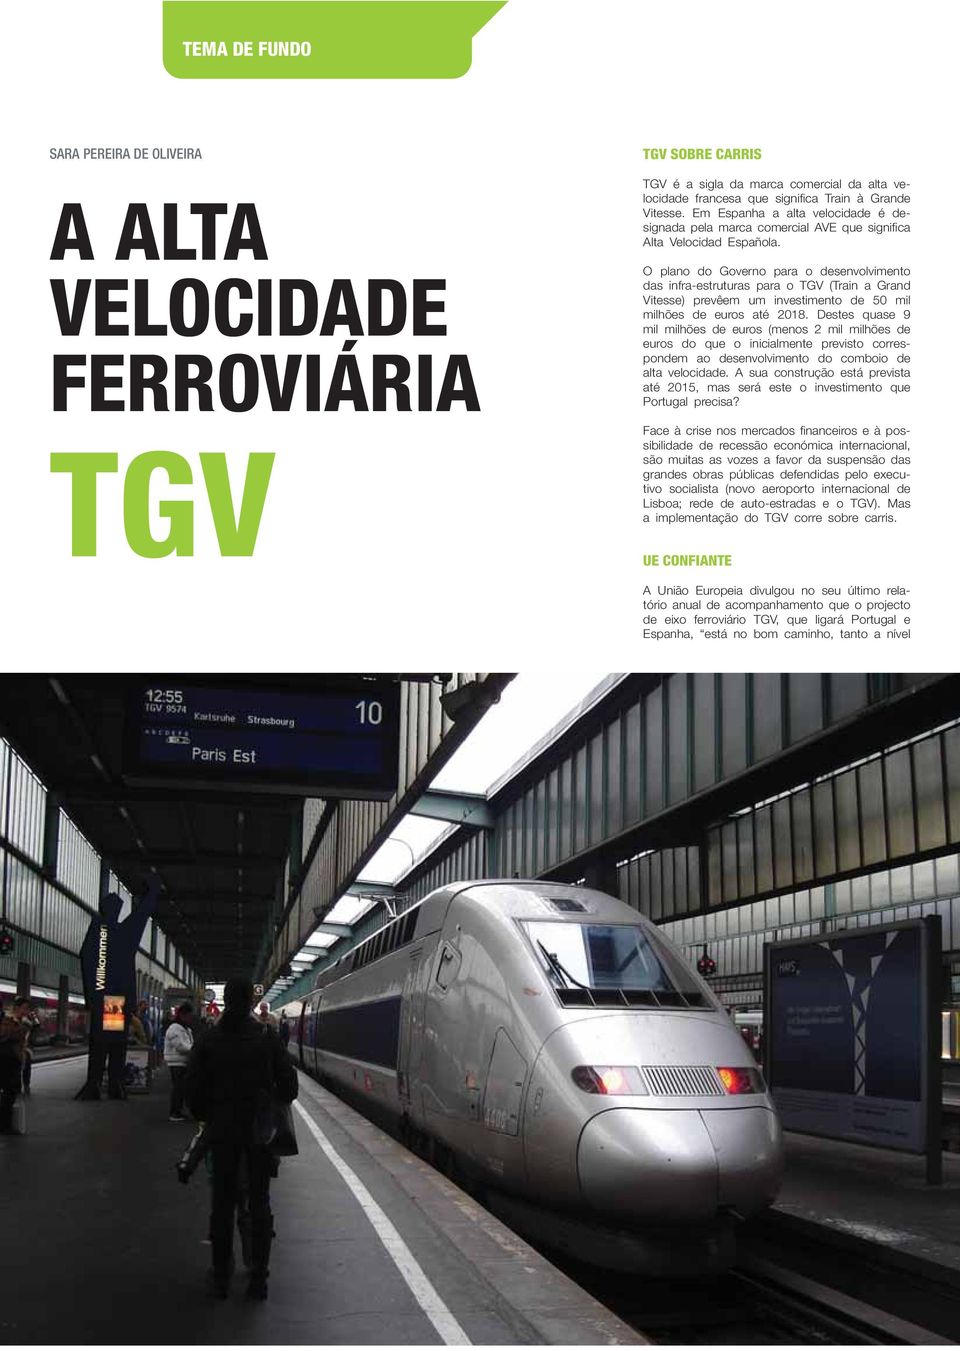 O plano do Governo para o desenvolvimento das infra-estruturas para o TGV (Train a Grand Vitesse) prevêem um investimento de 50 mil milhões de euros até 2018.